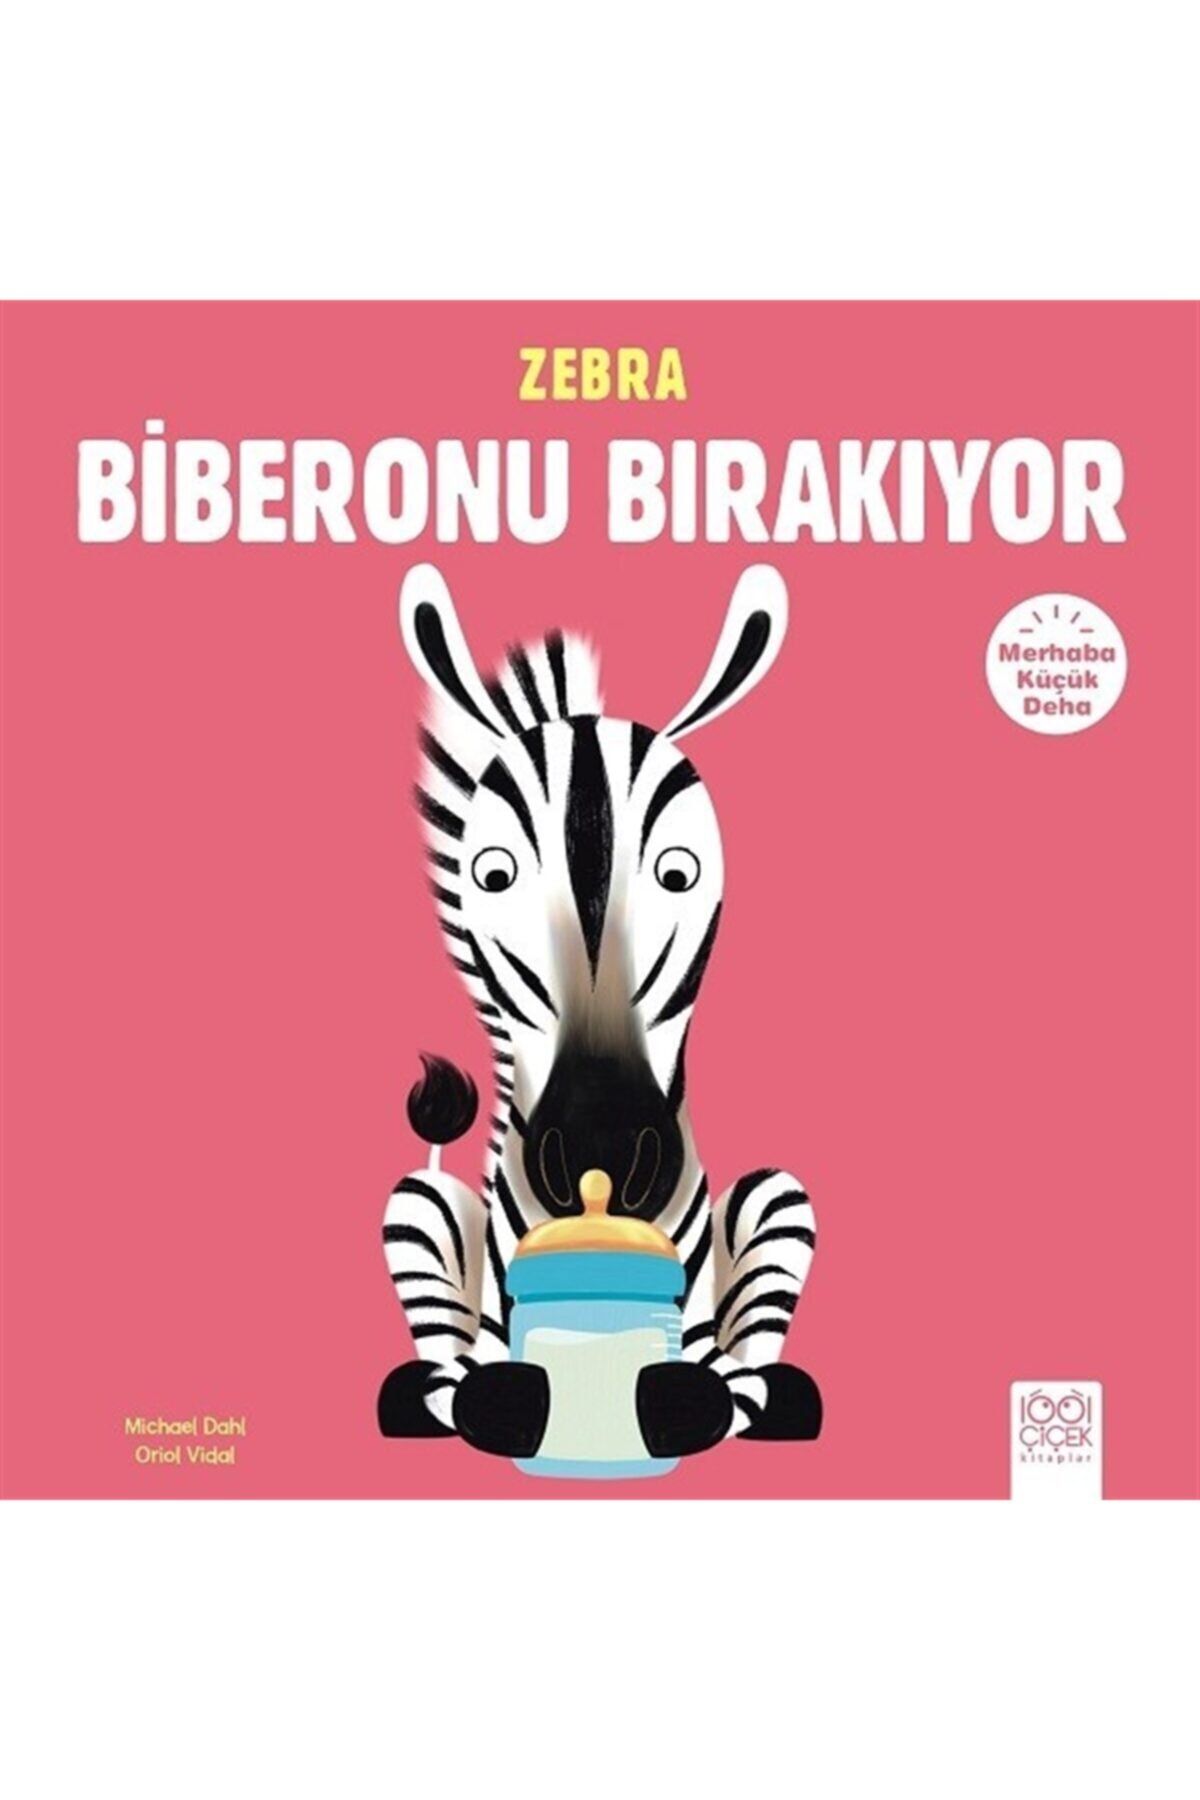 1001 Çiçek Kitaplar Bsrl Kmp3 Merhaba Küçük Deha: Zebra Biberonu Bırakıyor